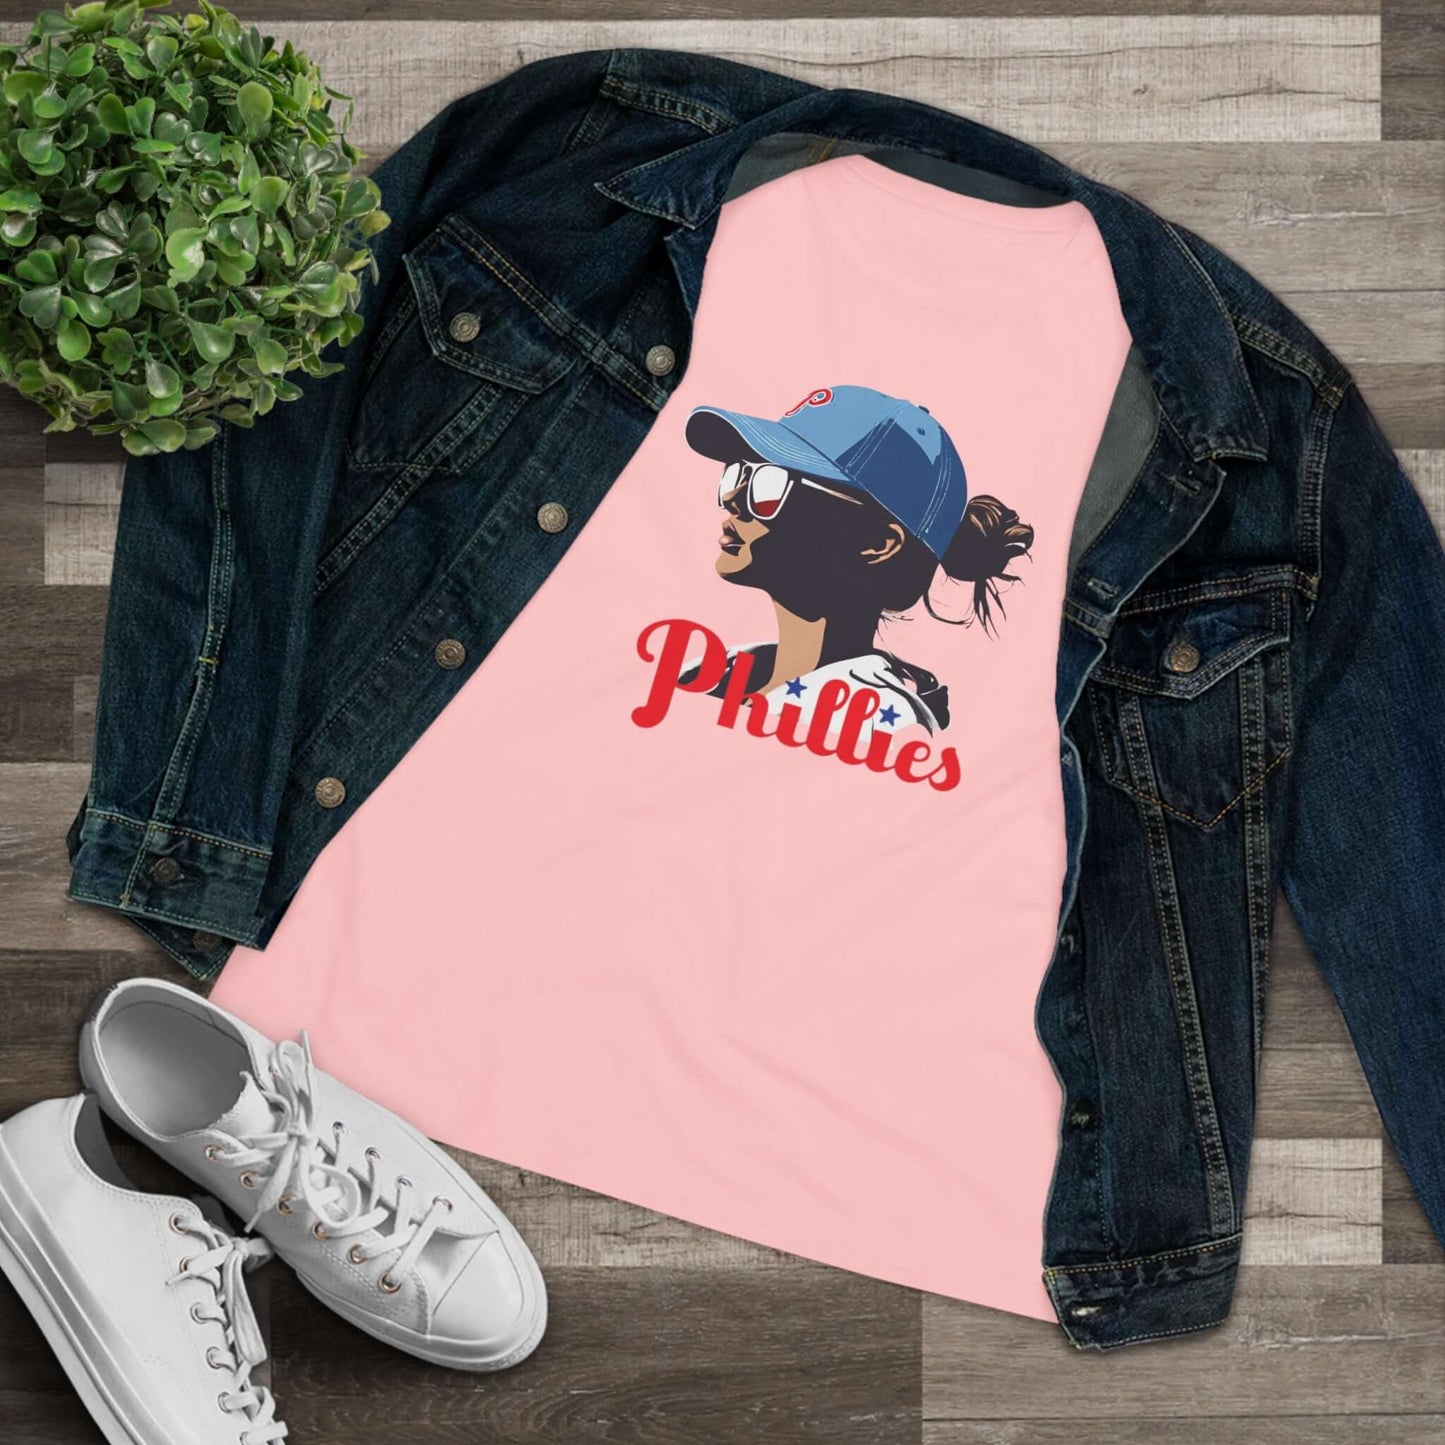 Phillies Baseball Women's Cotton Tee